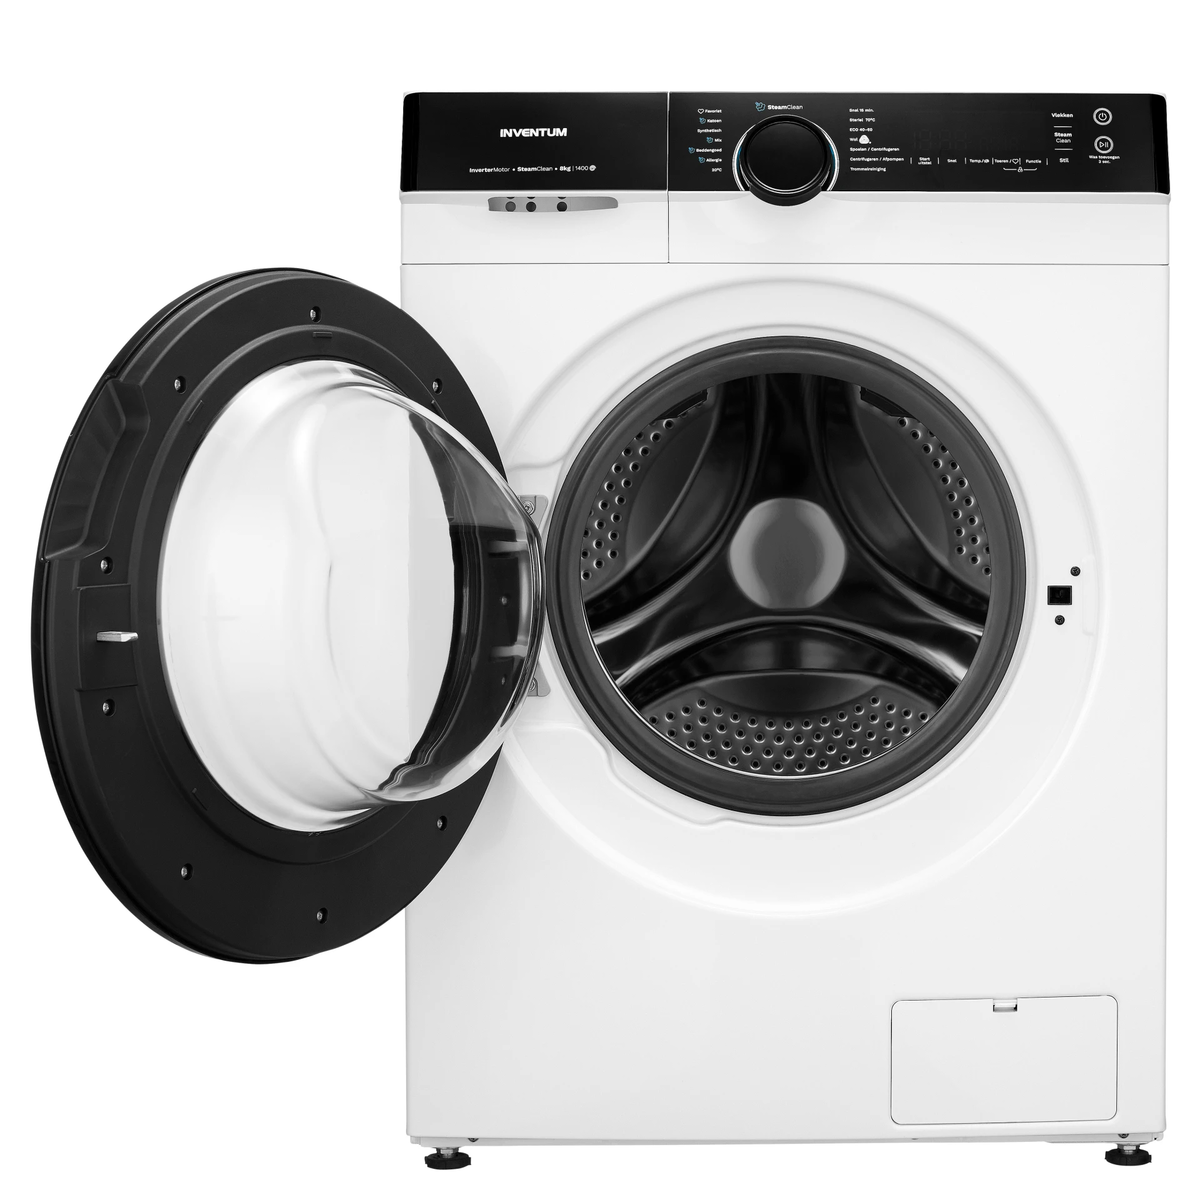 Inventum VWM9010W - Wasmachine - 9kg - 14 programma's - 1400 toeren - Energieklasse A - Steam Clean - Wit/Zwart